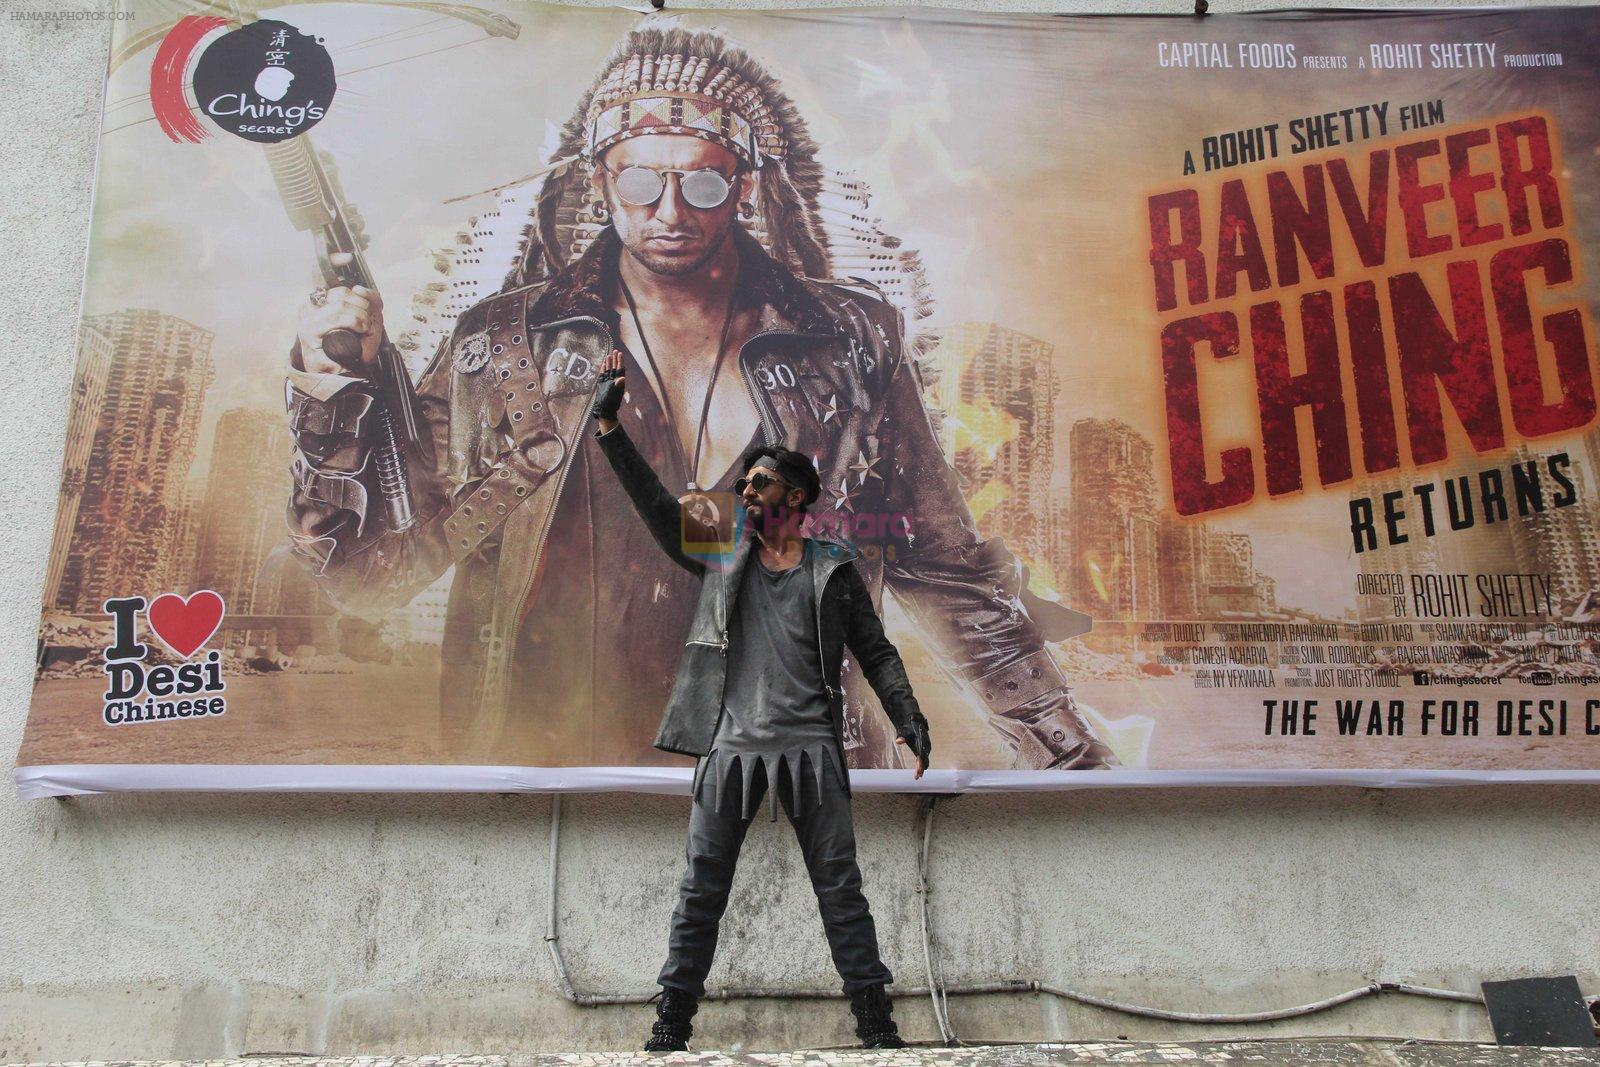 Ranveer Singh promote Ranveer Ching Returns on 19th Aug 2016